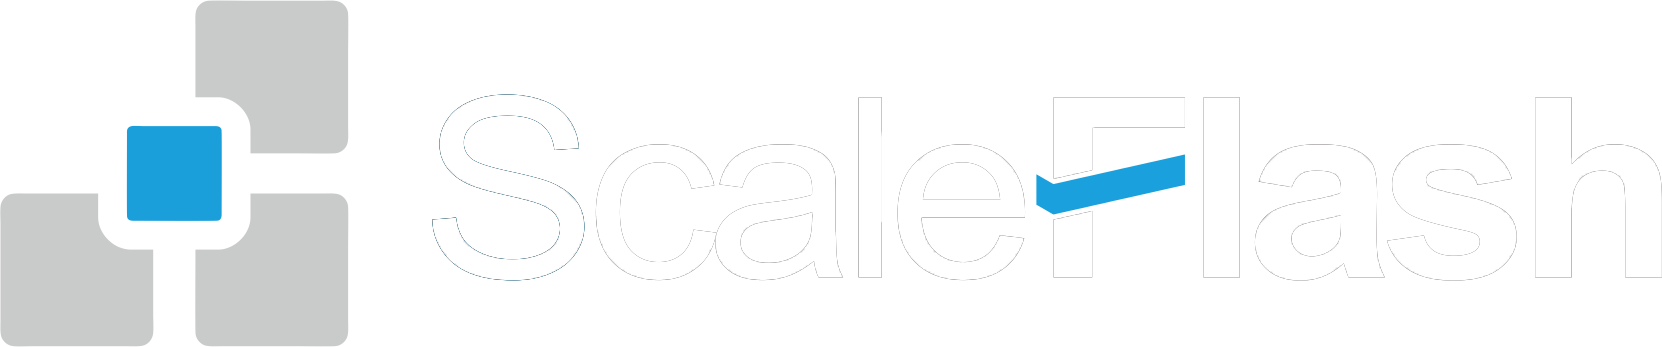 ScaleFlash极客天成-超高性能分布式存储